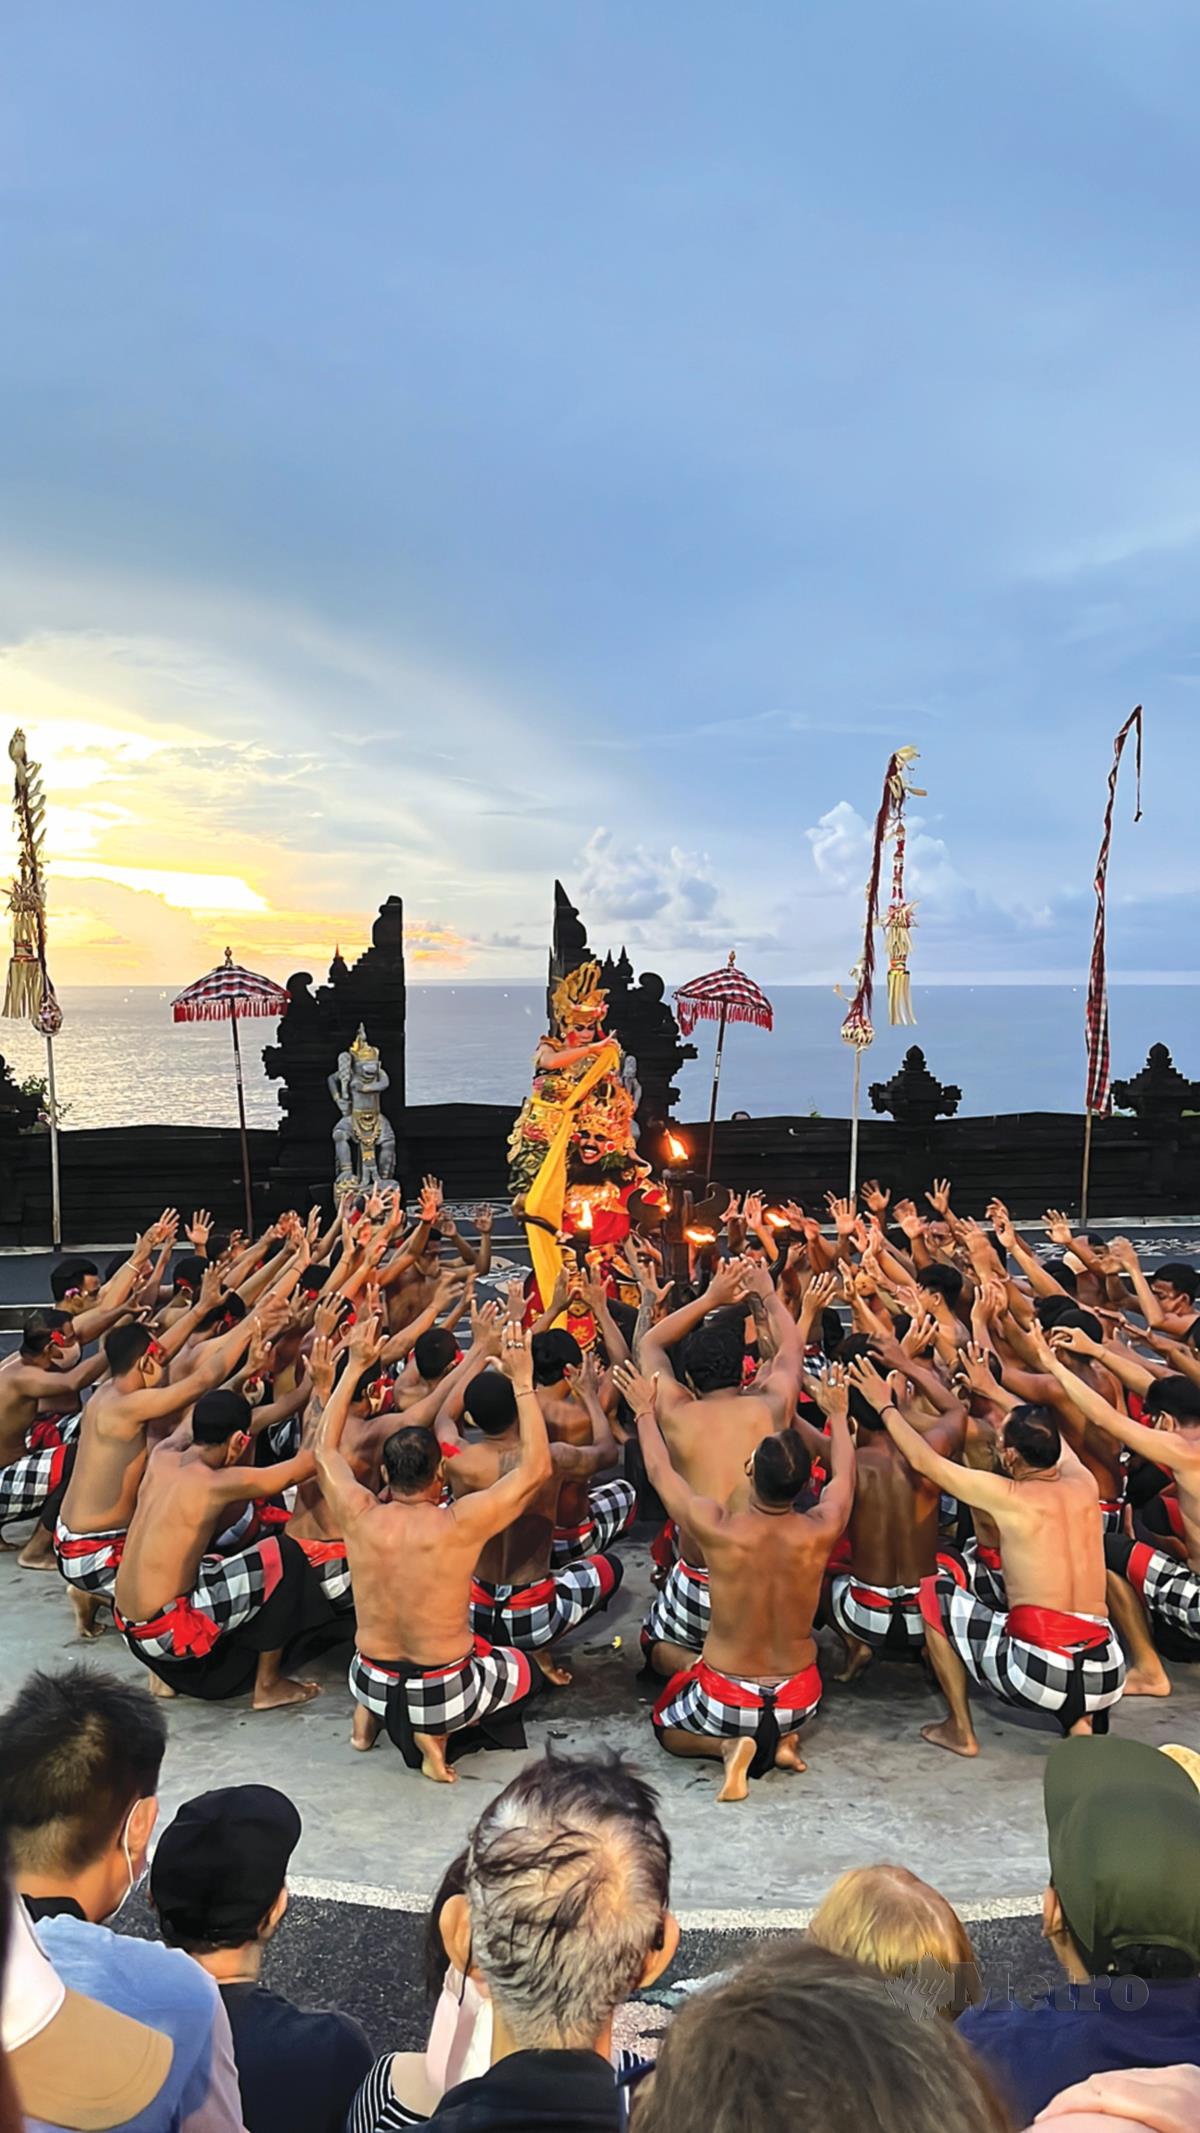 MENONTON persembahan Tarian Kecak di Uluwatu Temple ketika matahari terbenam.